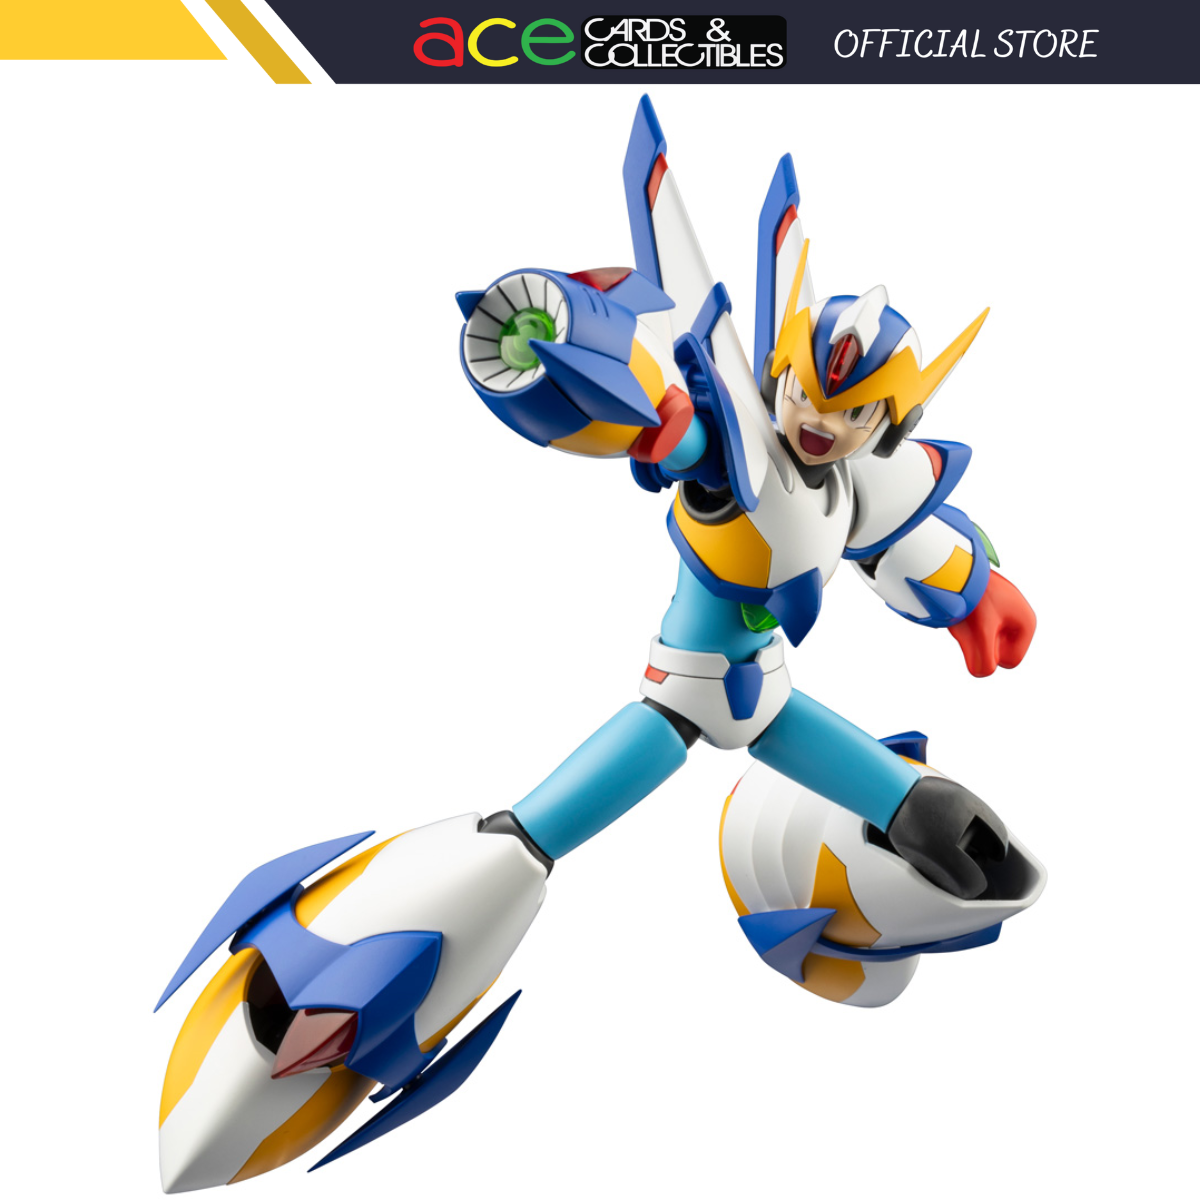 Kotobukiya Mega Man X Falcon Armor / Rockman X Falcon Armor-Kotobukiya-Ace Cards &amp; Collectibles